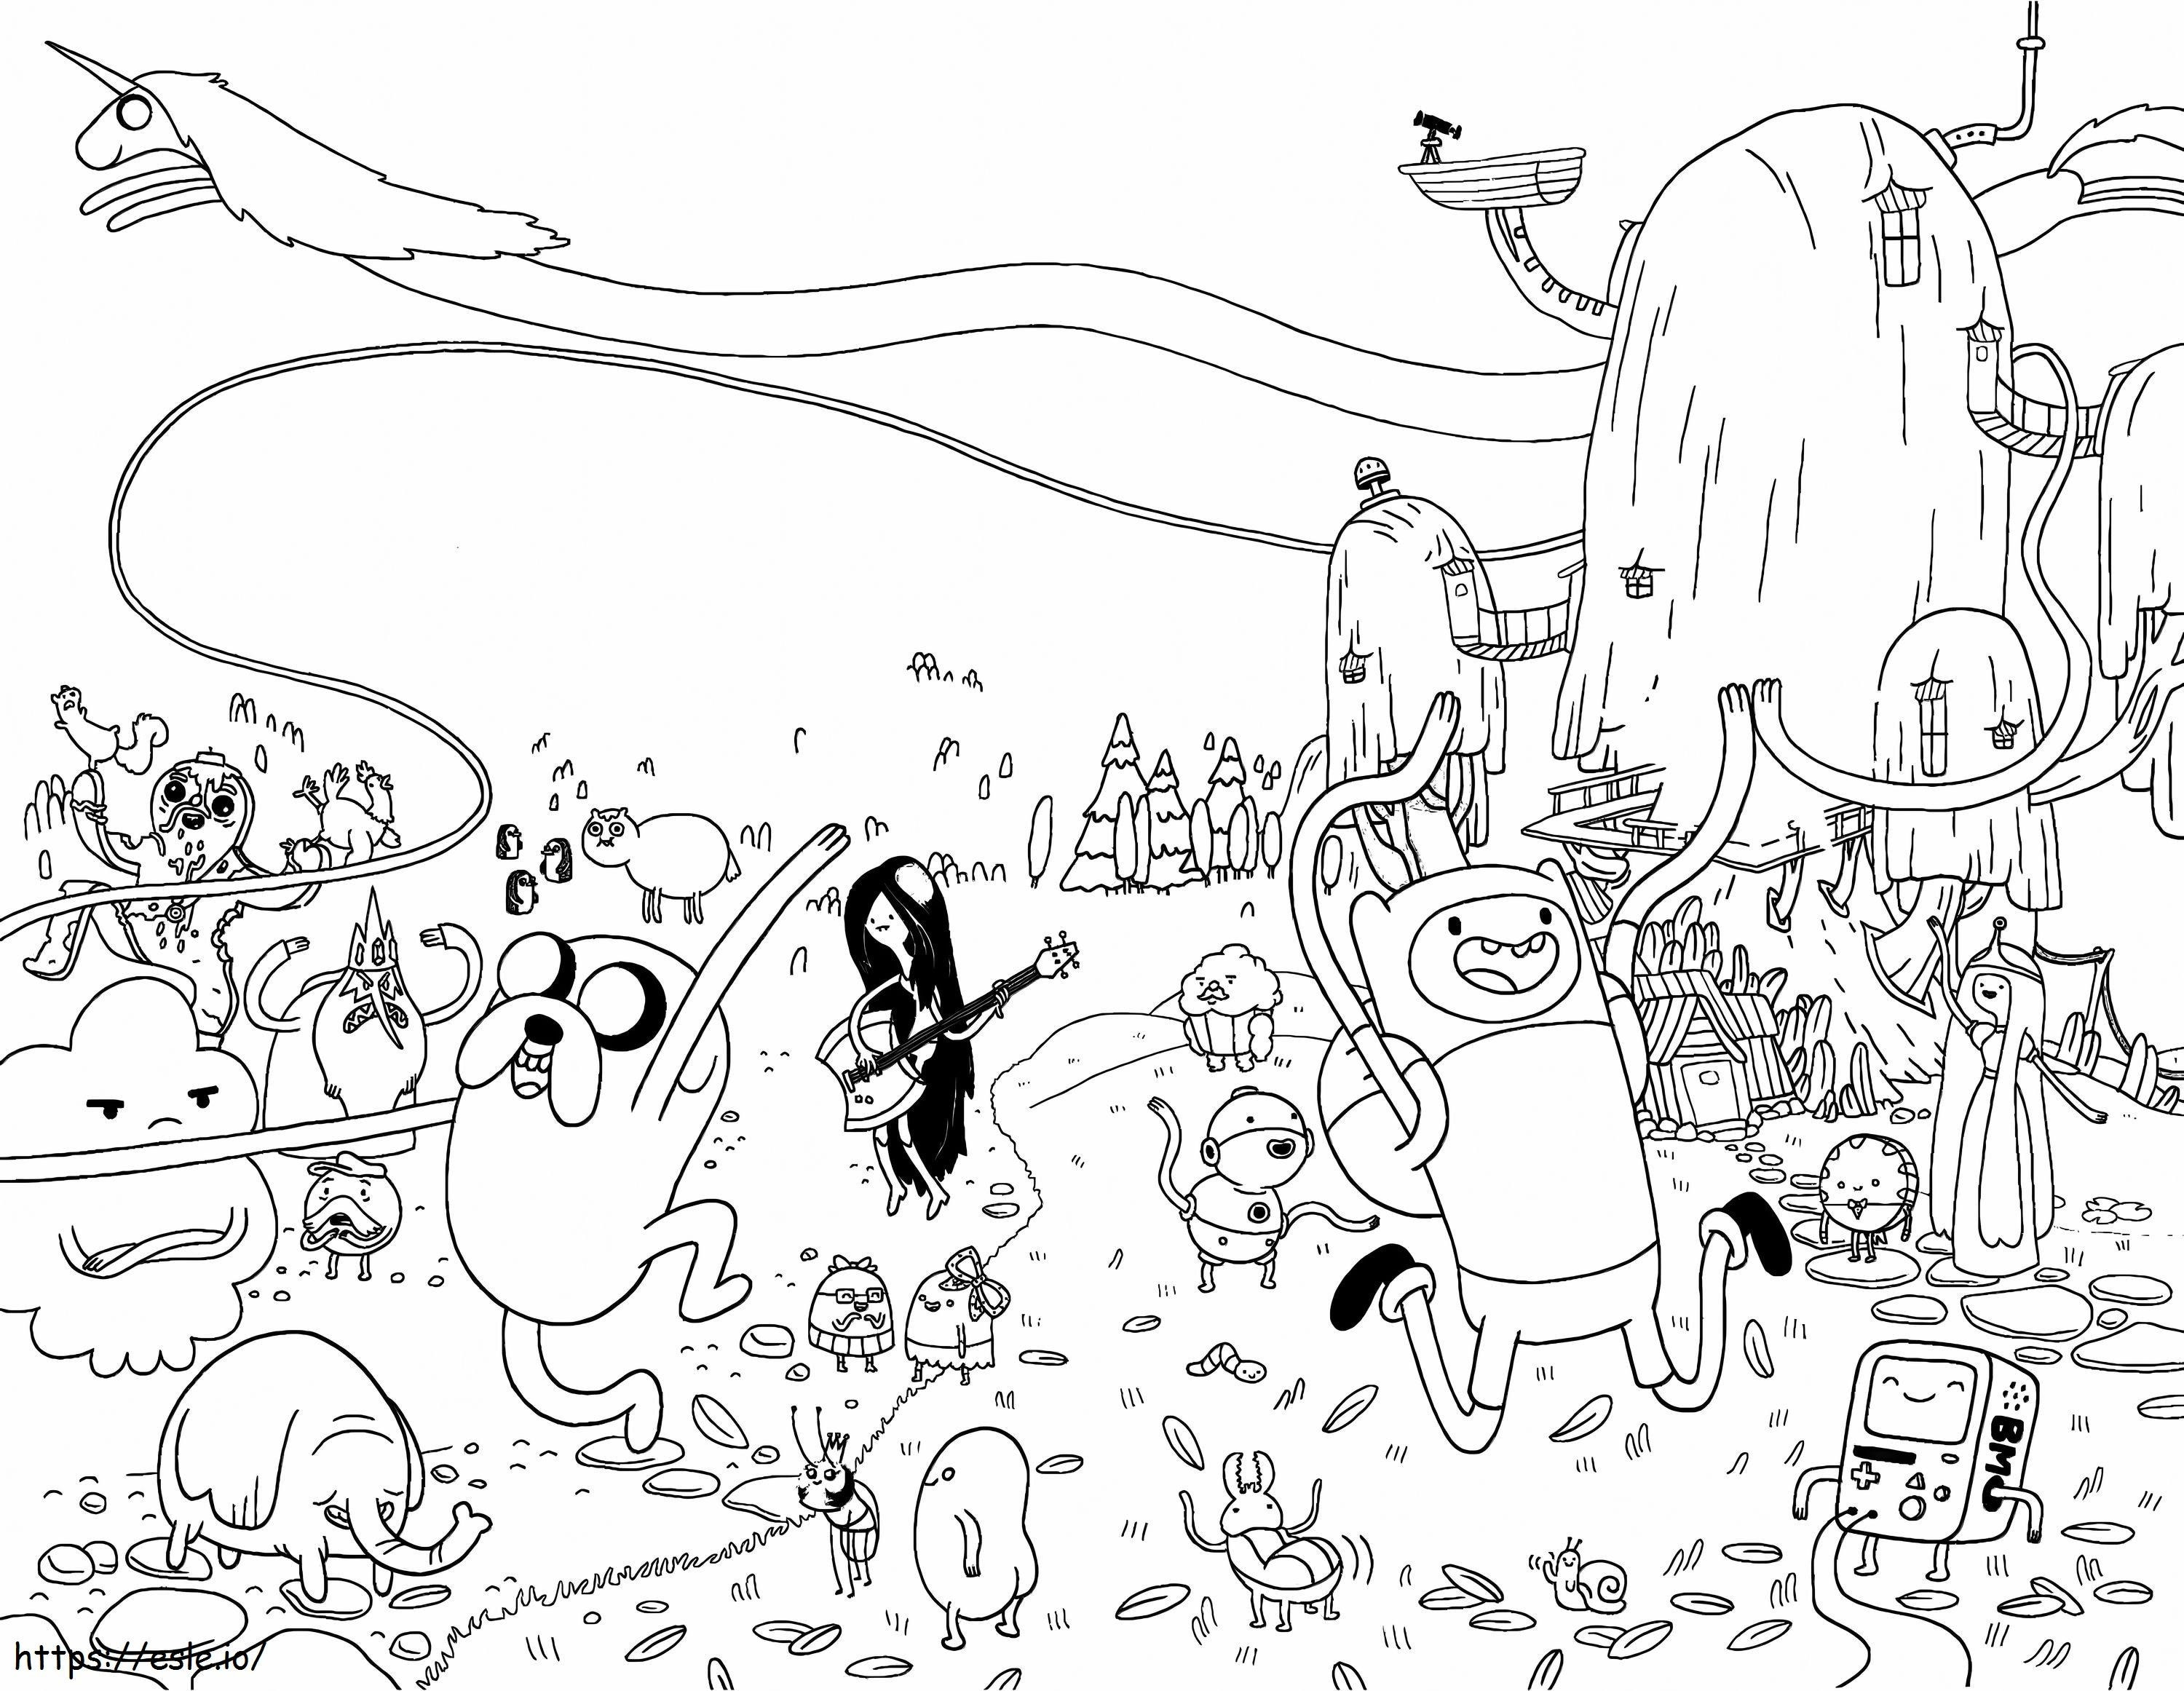 Coloriage Tous les personnages de Happy Adventure Time à imprimer dessin